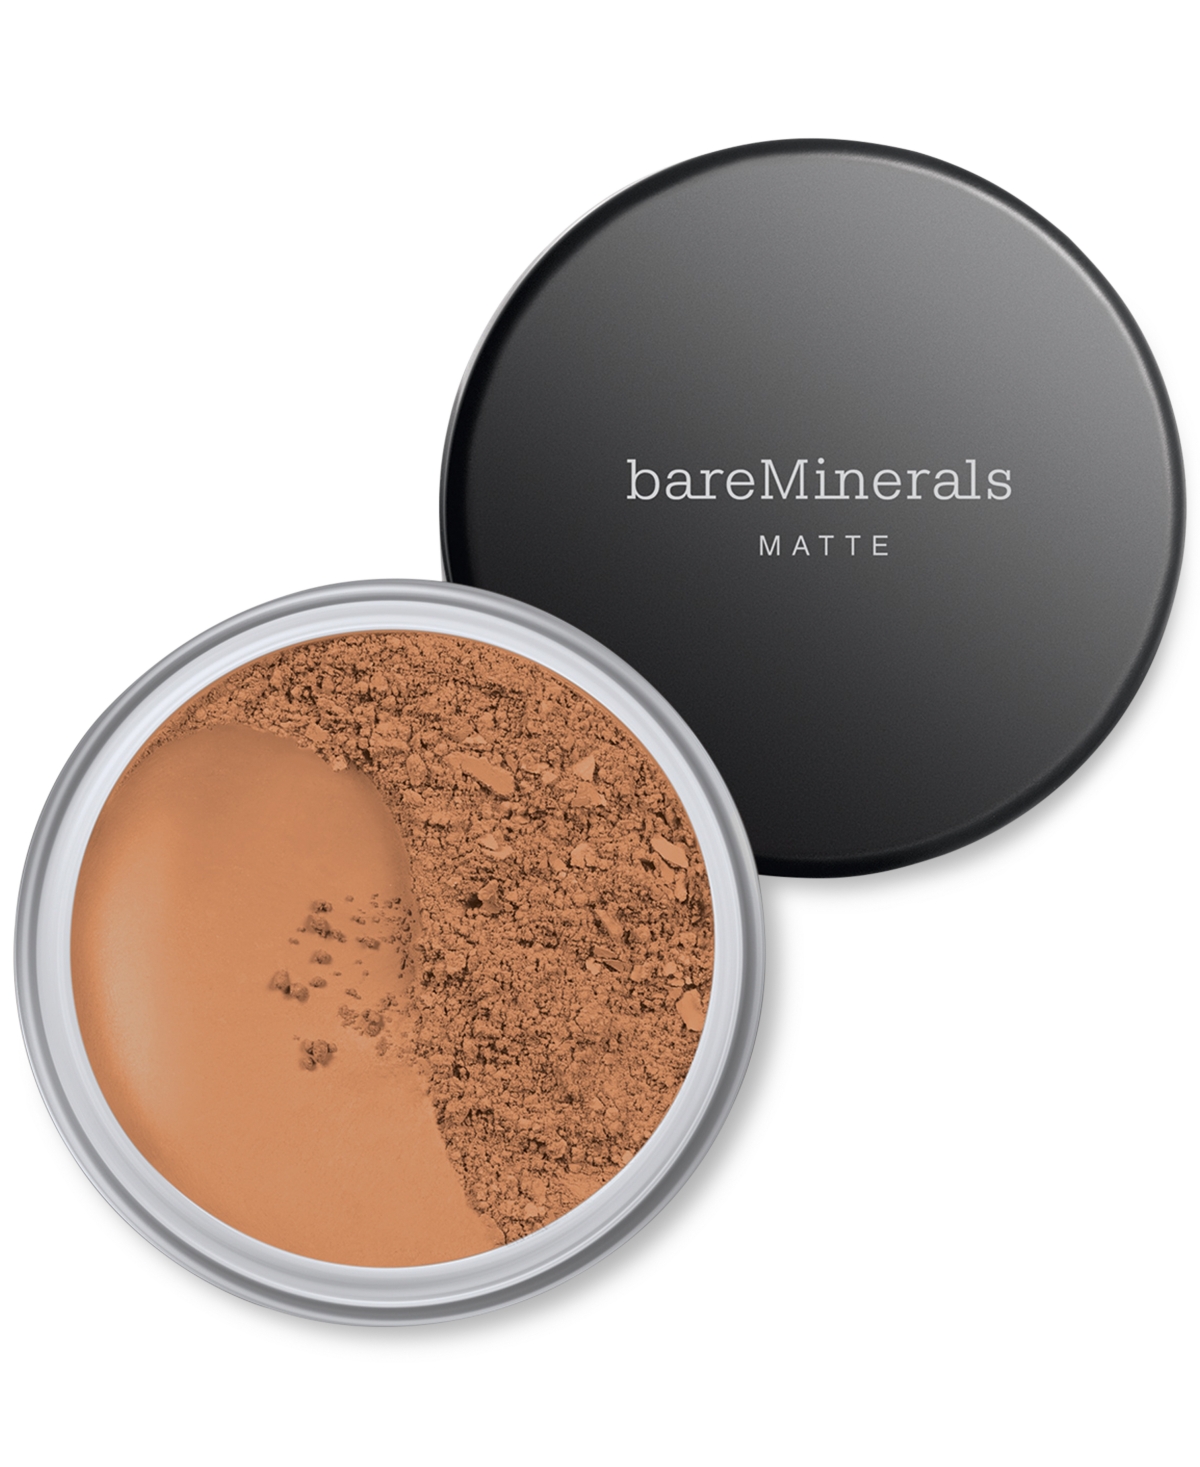 Bareminerals Matte Loose Powder Foundation Spf 15 In Medium Dark  - For Dark Skin With Cool T